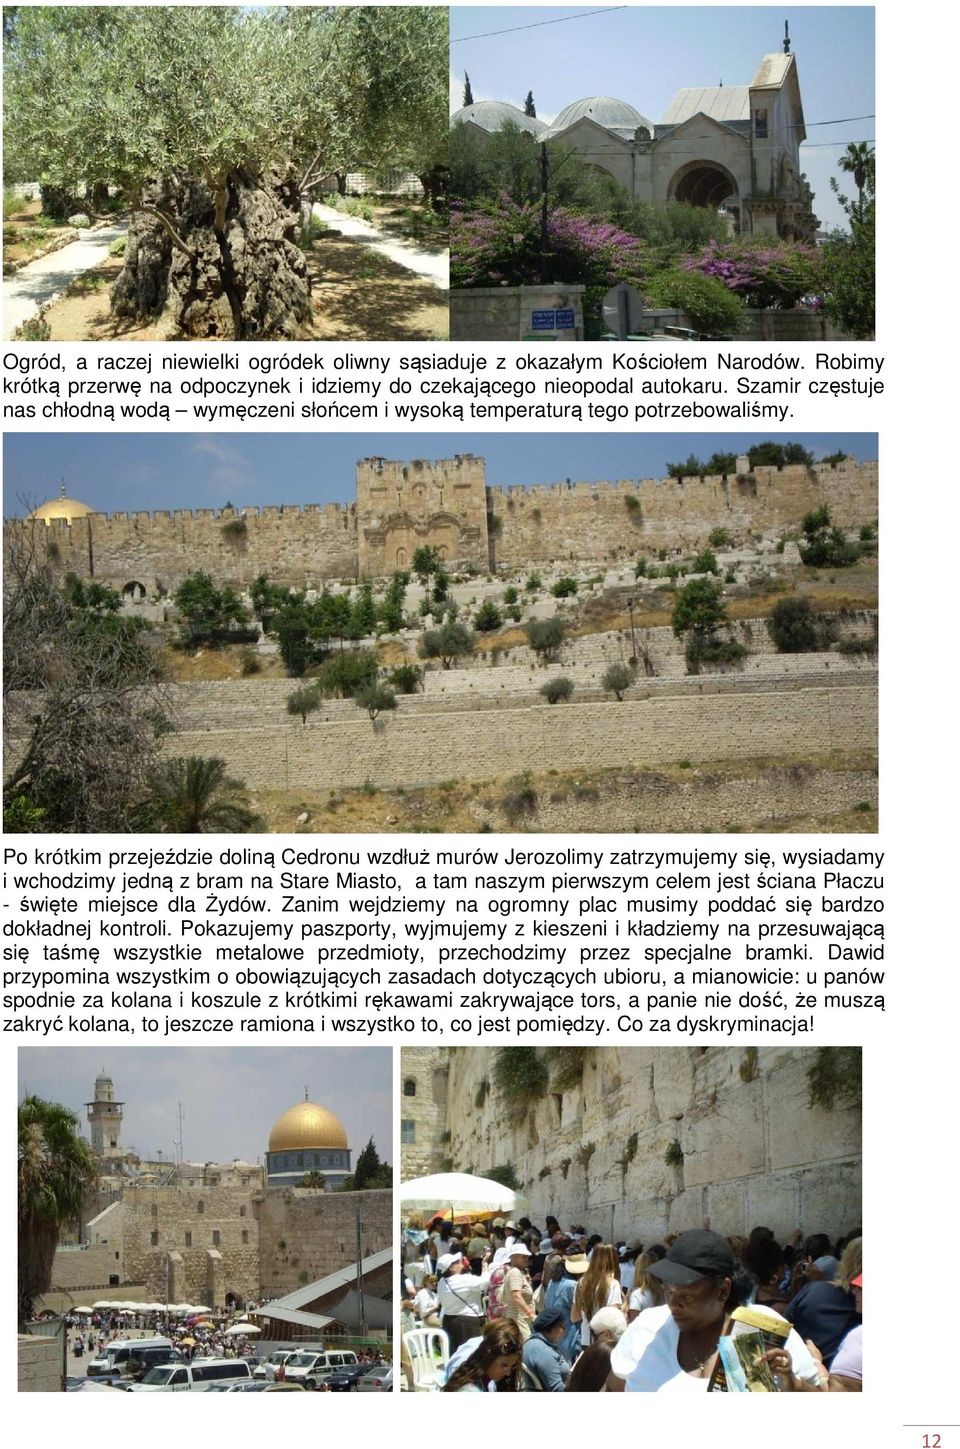 Po krótkim przejeździe doliną Cedronu wzdłuż murów Jerozolimy zatrzymujemy się, wysiadamy i wchodzimy jedną z bram na Stare Miasto, a tam naszym pierwszym celem jest ściana Płaczu - święte miejsce